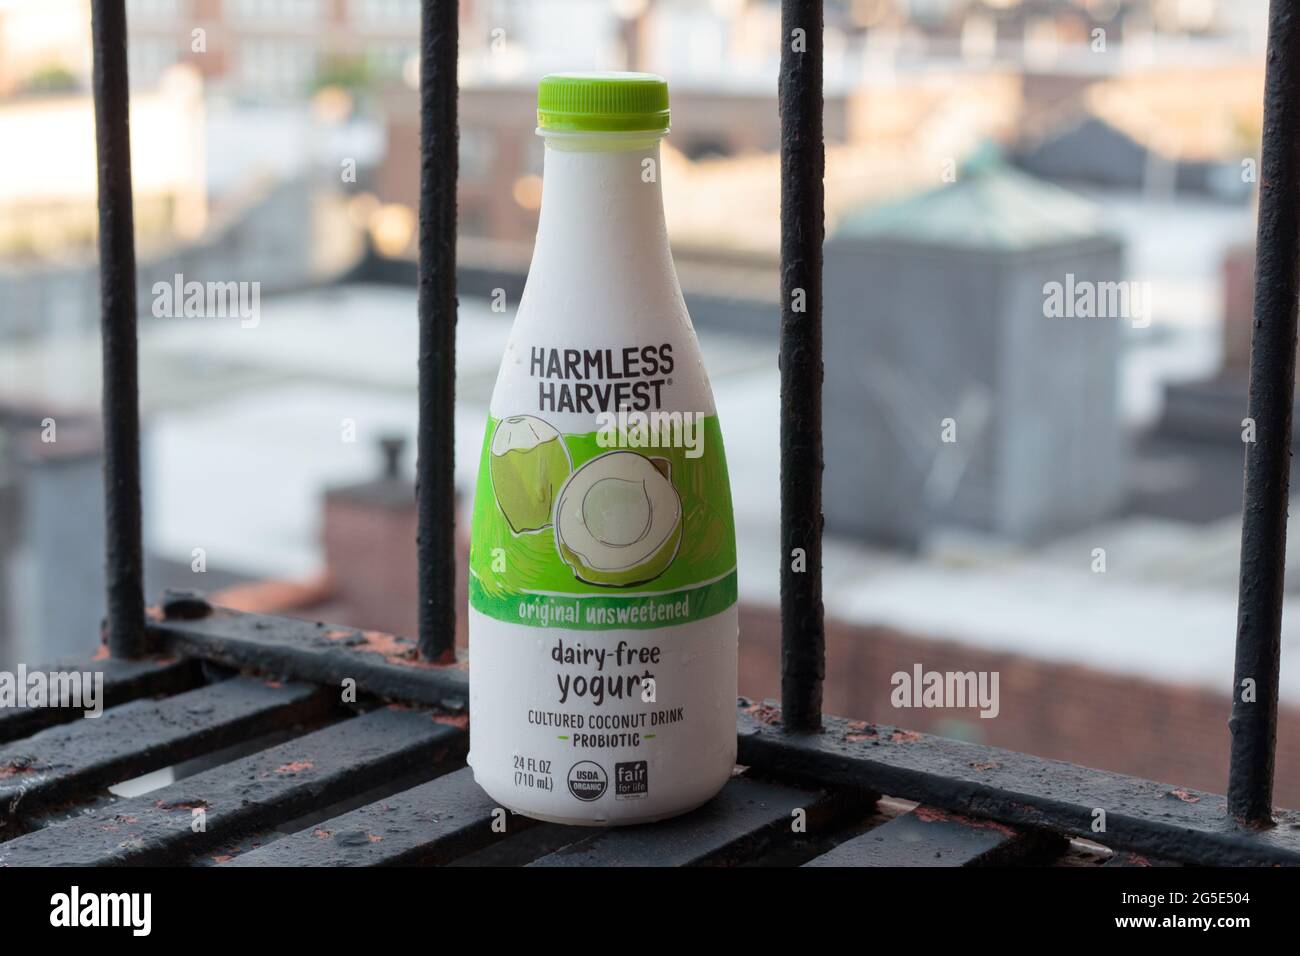 Flasche harmlosen Harvest Marke original, ungesüßt, Bio-Milch-frei trinkbaren Joghurt, probiotisch kultivierte Kokosmilch, auf einer Feuerflut Stockfoto